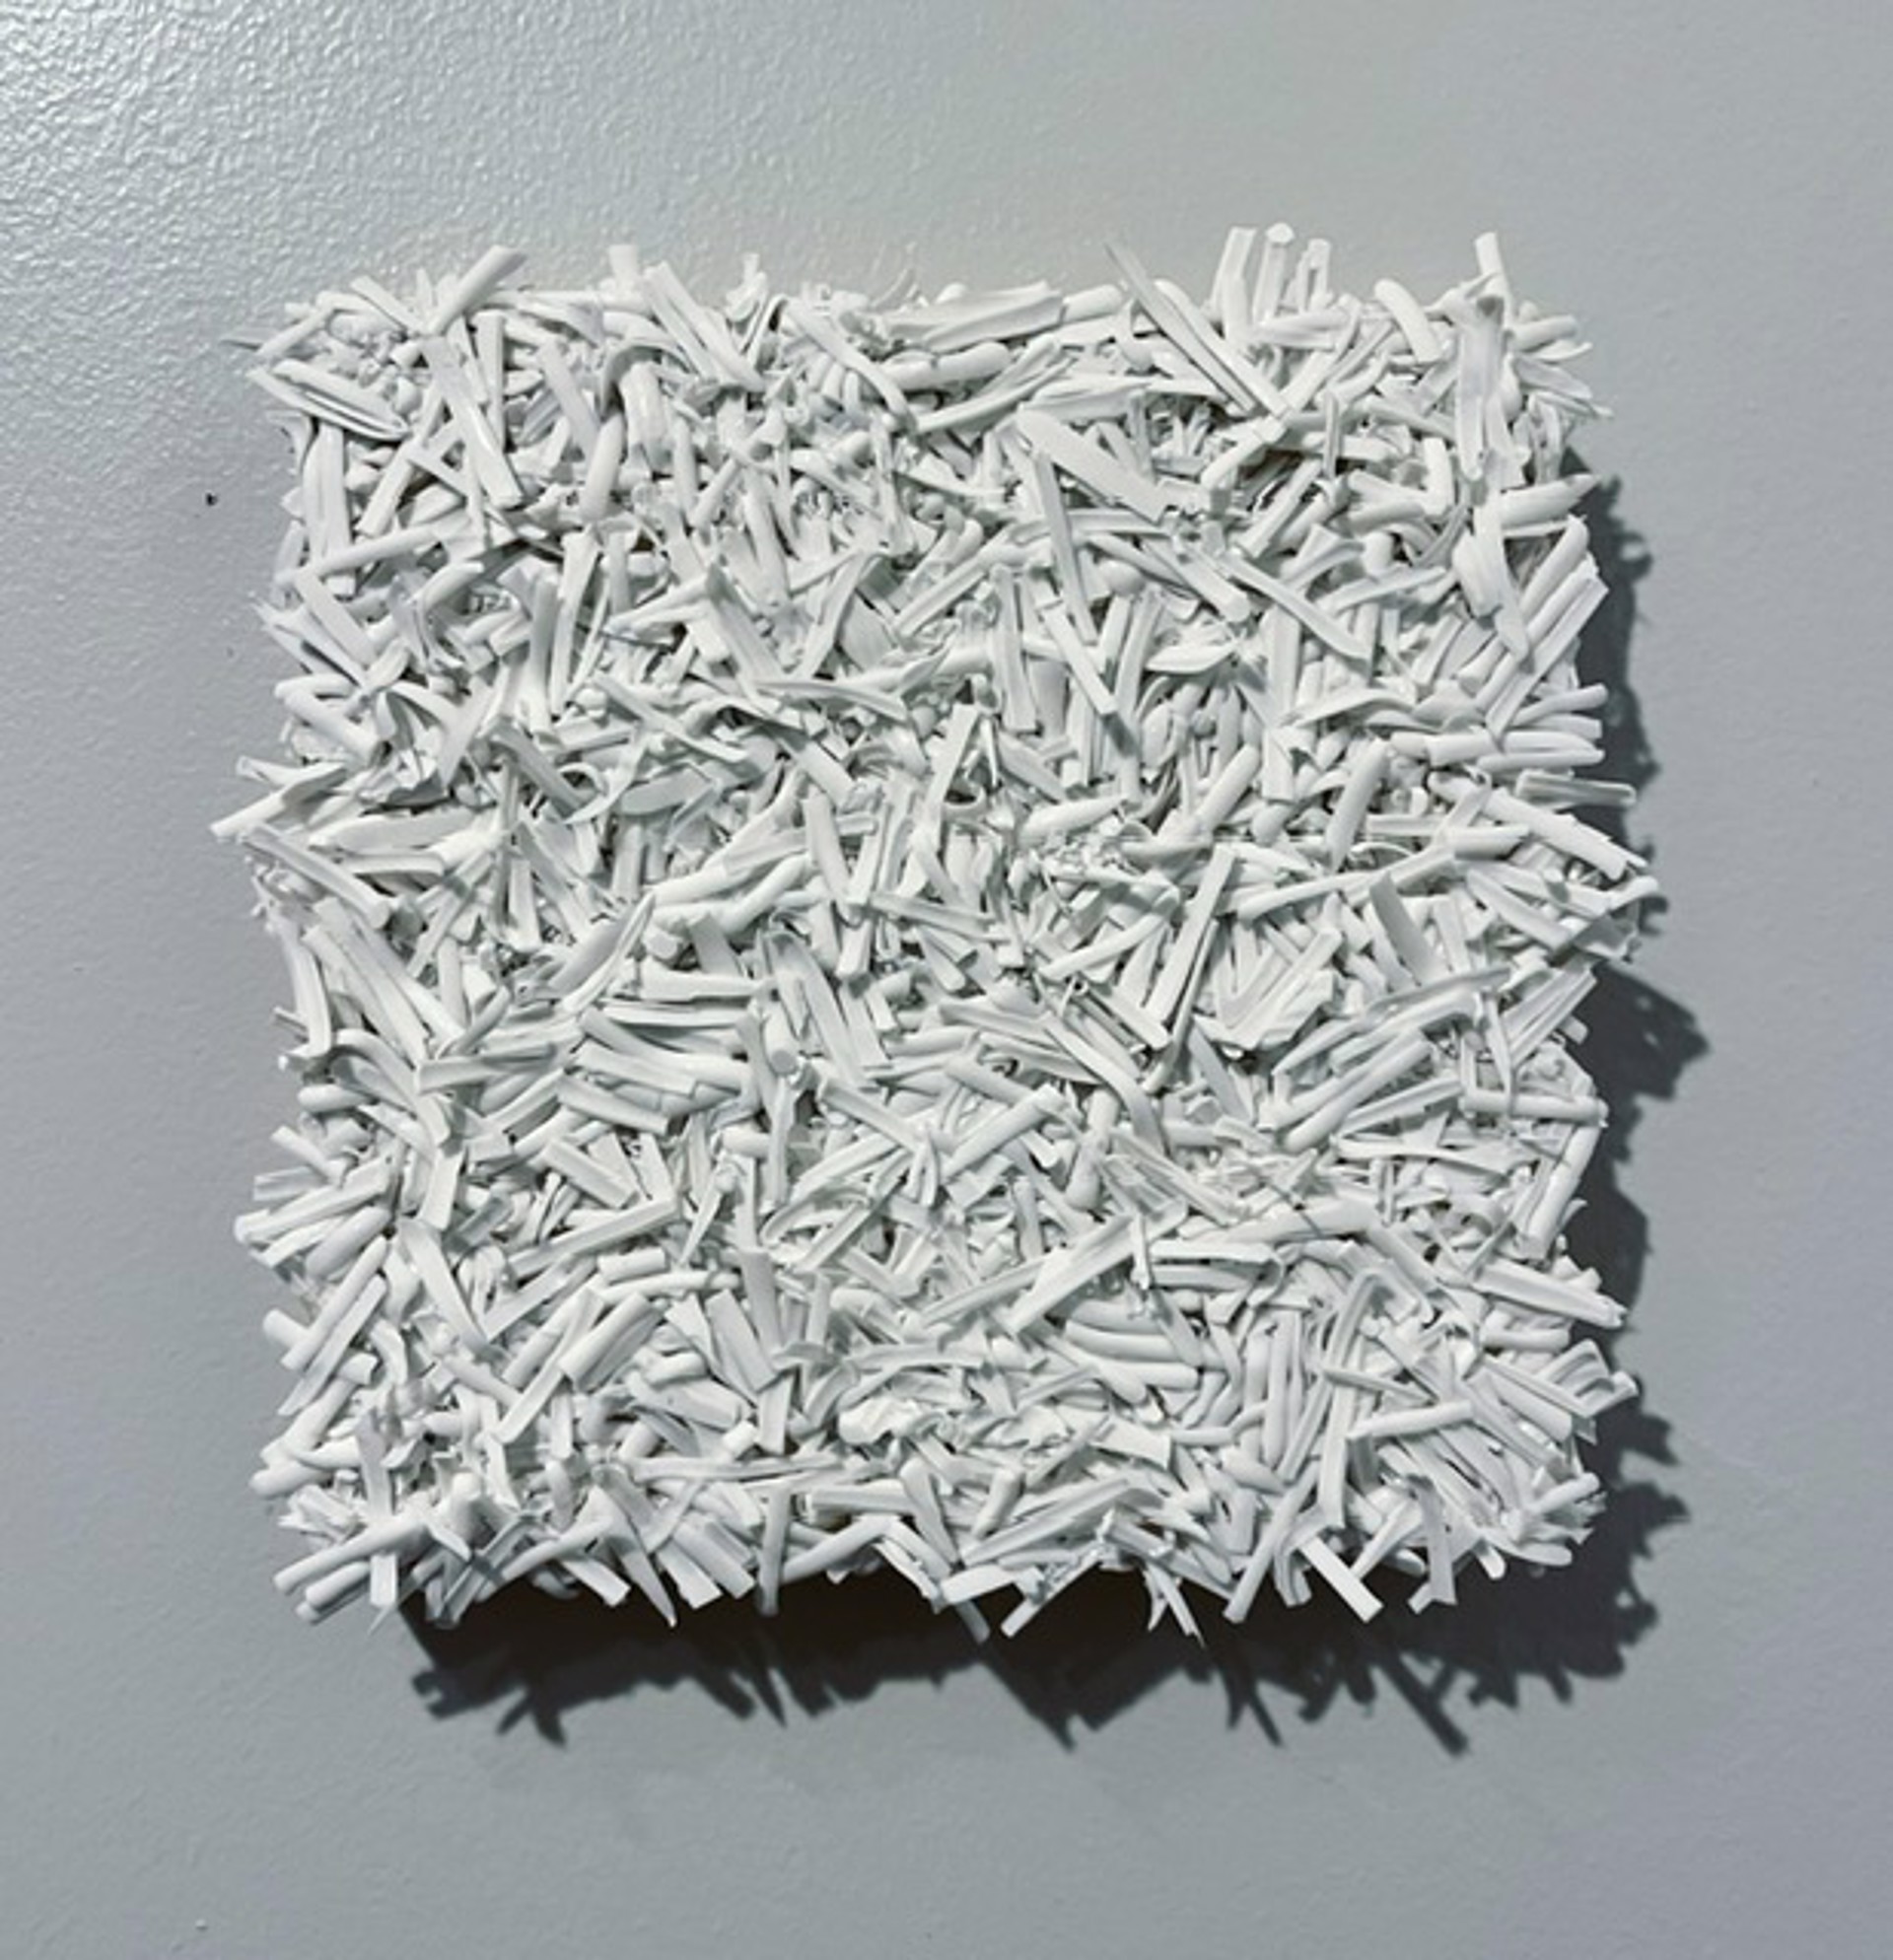 Fringe White Eraser 6x6 by Evan Stoler